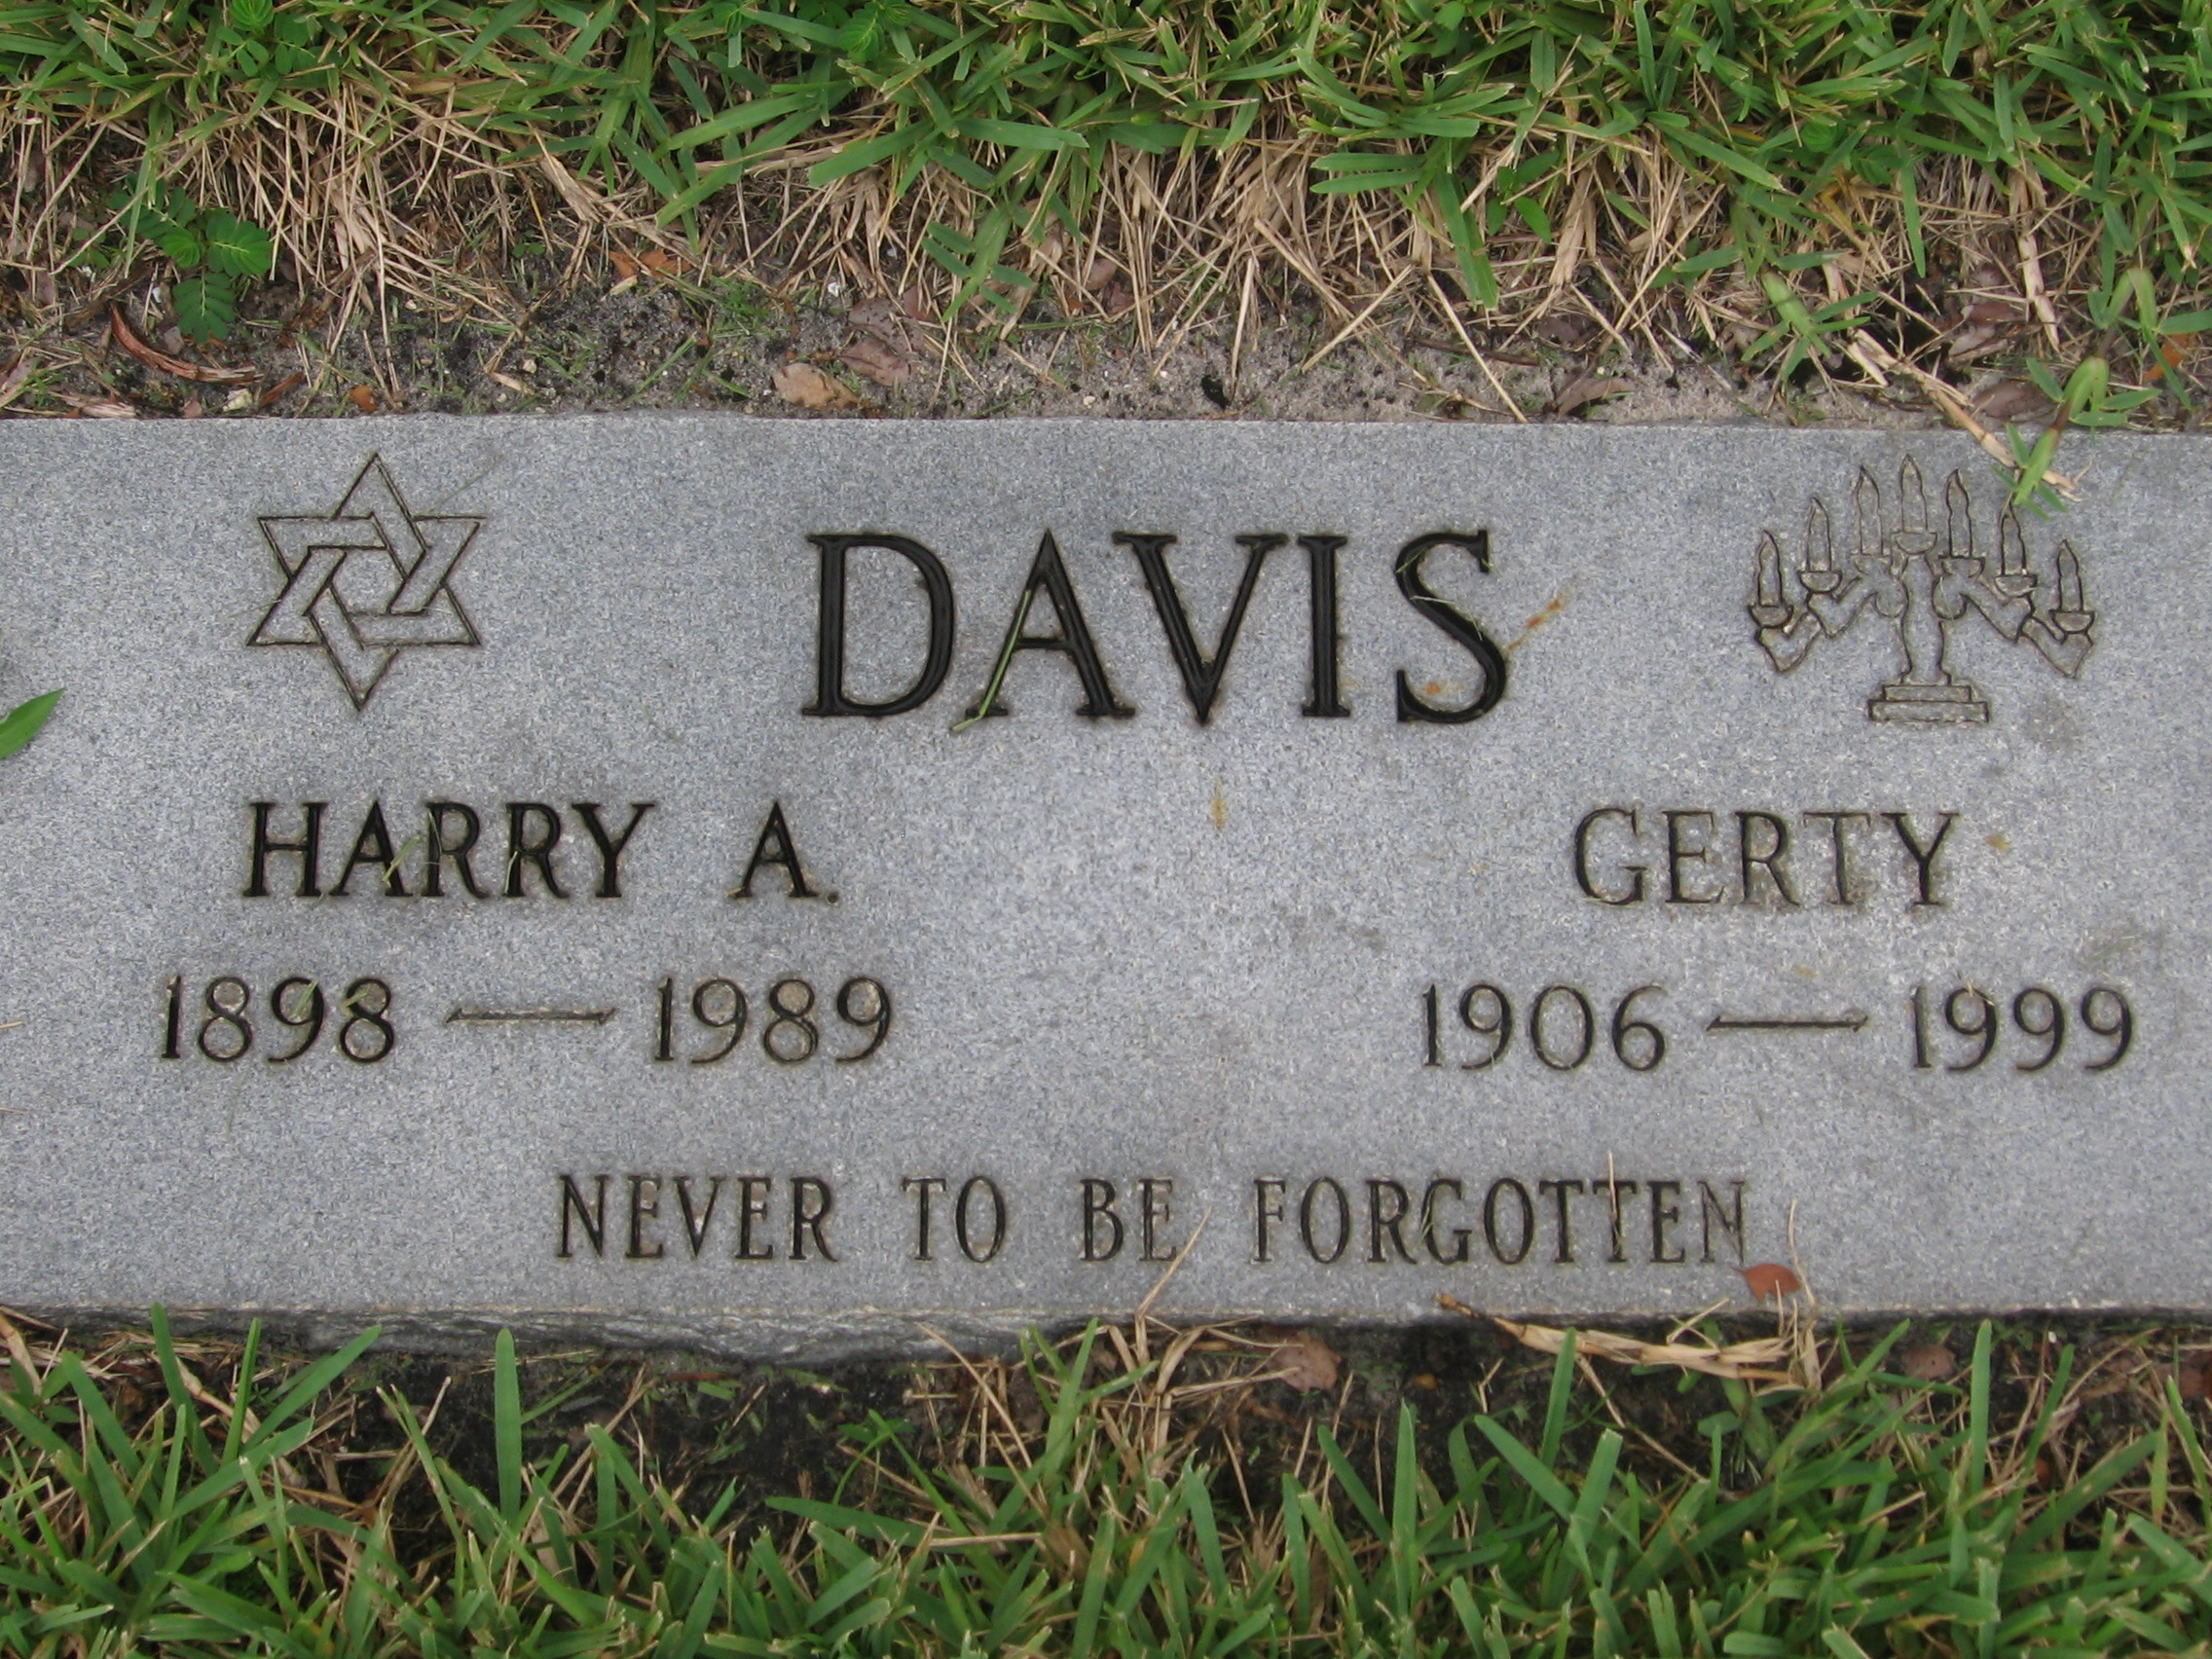 Gerty Davis